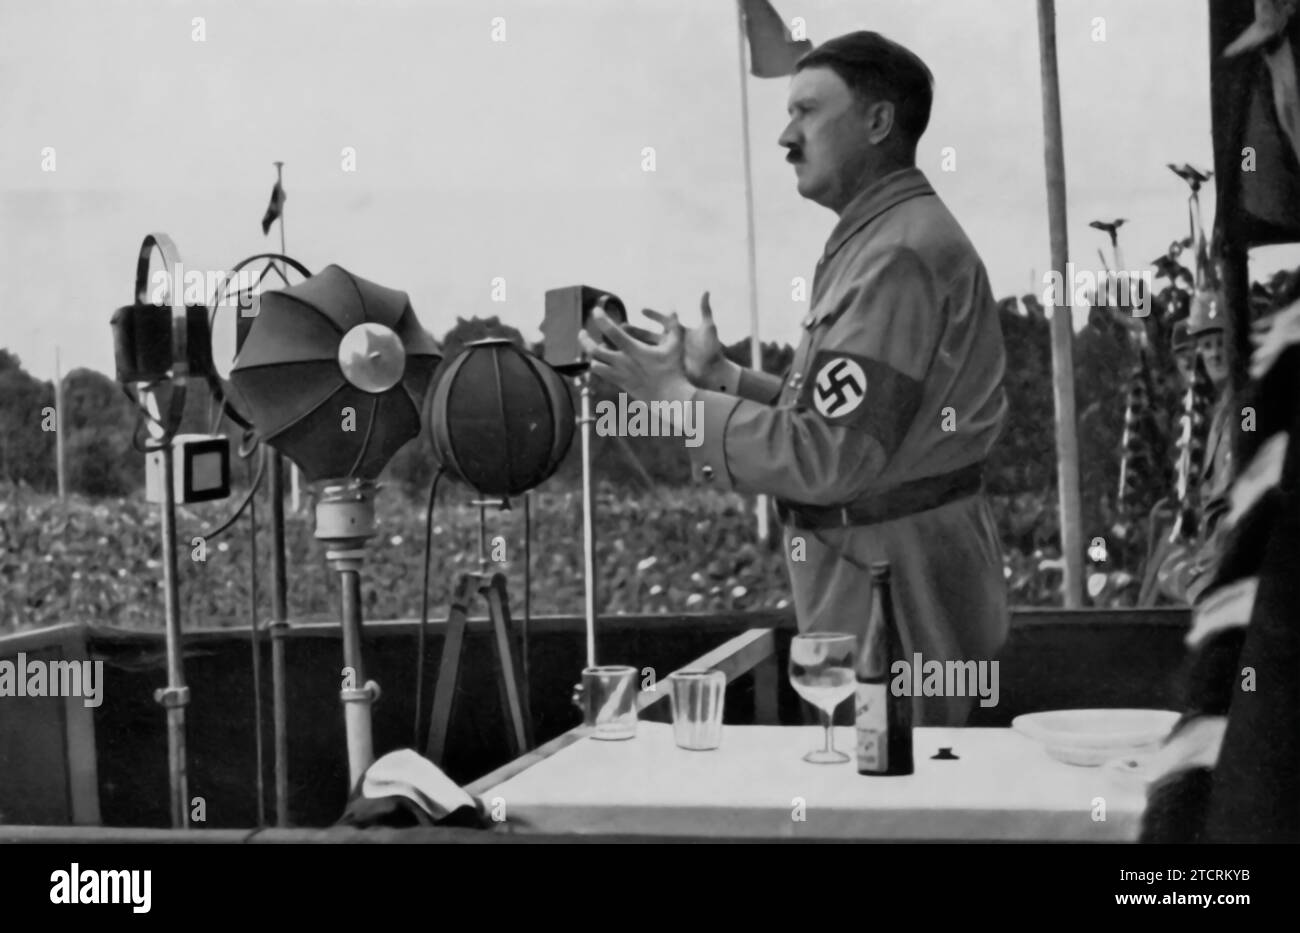 Adolf Hitler ist dargestellt, das sich an das deutsche Volk wendet, ein Bild, das seine häufigen öffentlichen Reden repräsentiert, die für die Öffentlichkeitsarbeit und Propaganda des NS-Regimes von zentraler Bedeutung waren. Diese Reden, die oft landesweit ausgestrahlt wurden, waren der Schlüssel zur direkten Vermittlung der NS-Politik und -Ideologie an die Bevölkerung. Hitlers Ansprachen sollten nationale Gefühle ansprechen, Unterstützung für die Ziele des Regimes sammeln und seine Position als vereinigender Führer Deutschlands stärken. Stockfoto